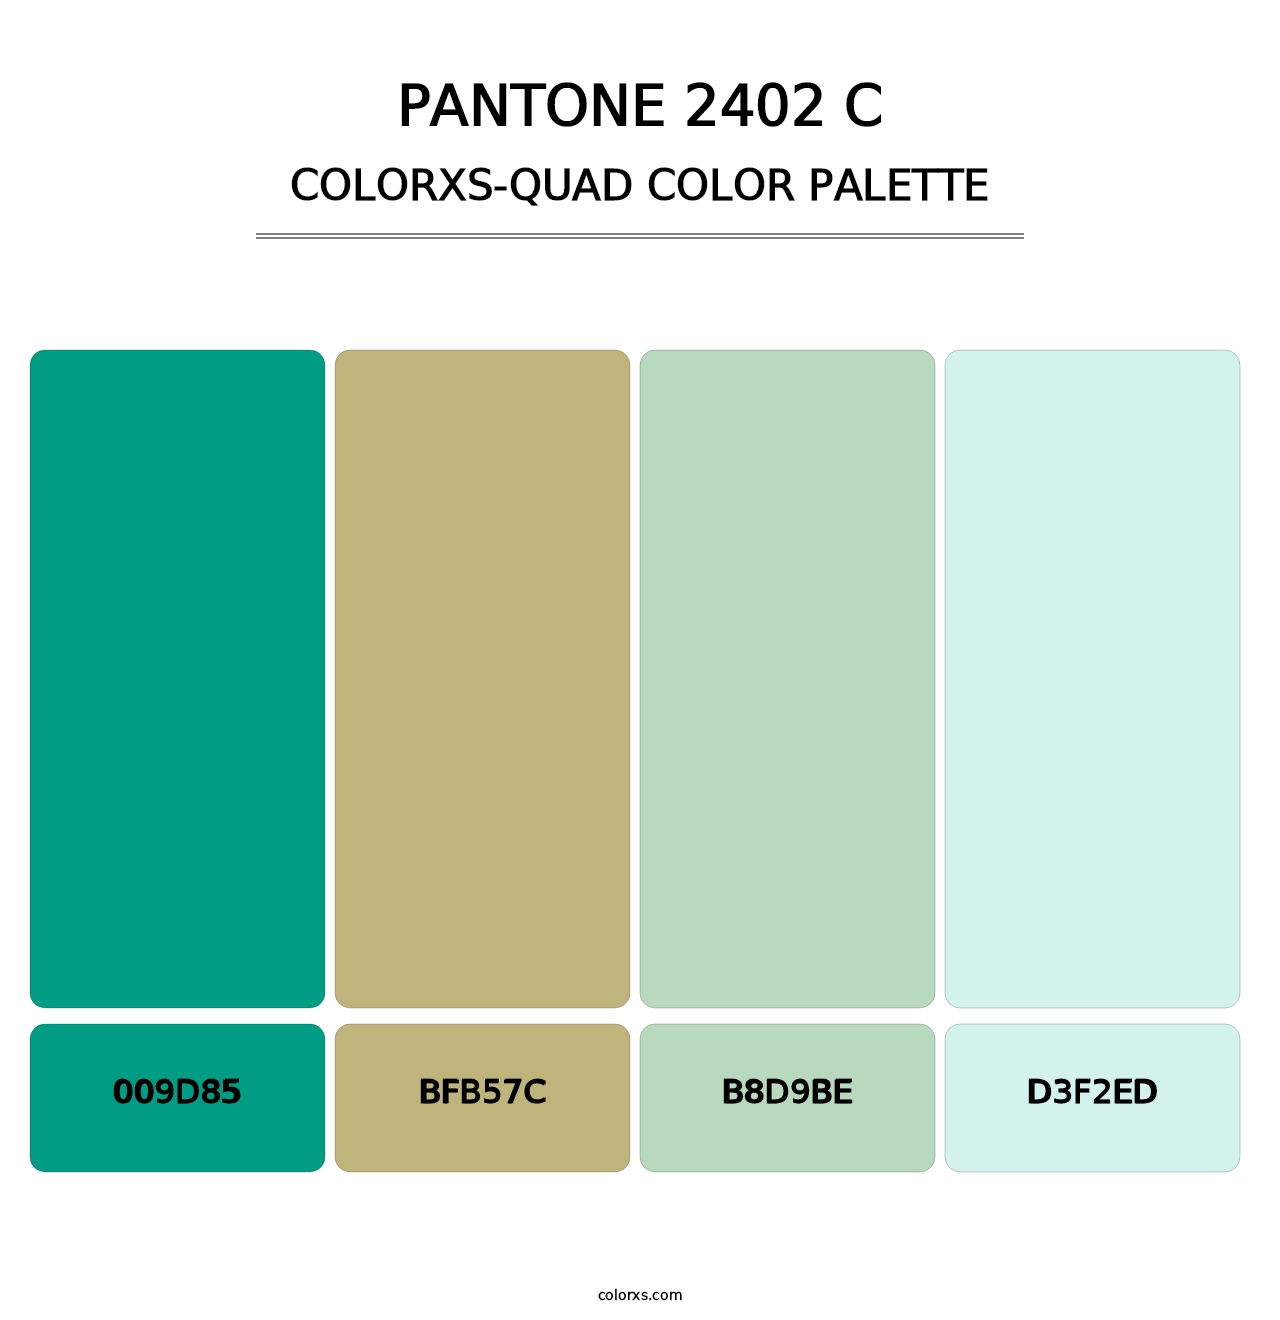 PANTONE 2402 C - Colorxs Quad Palette